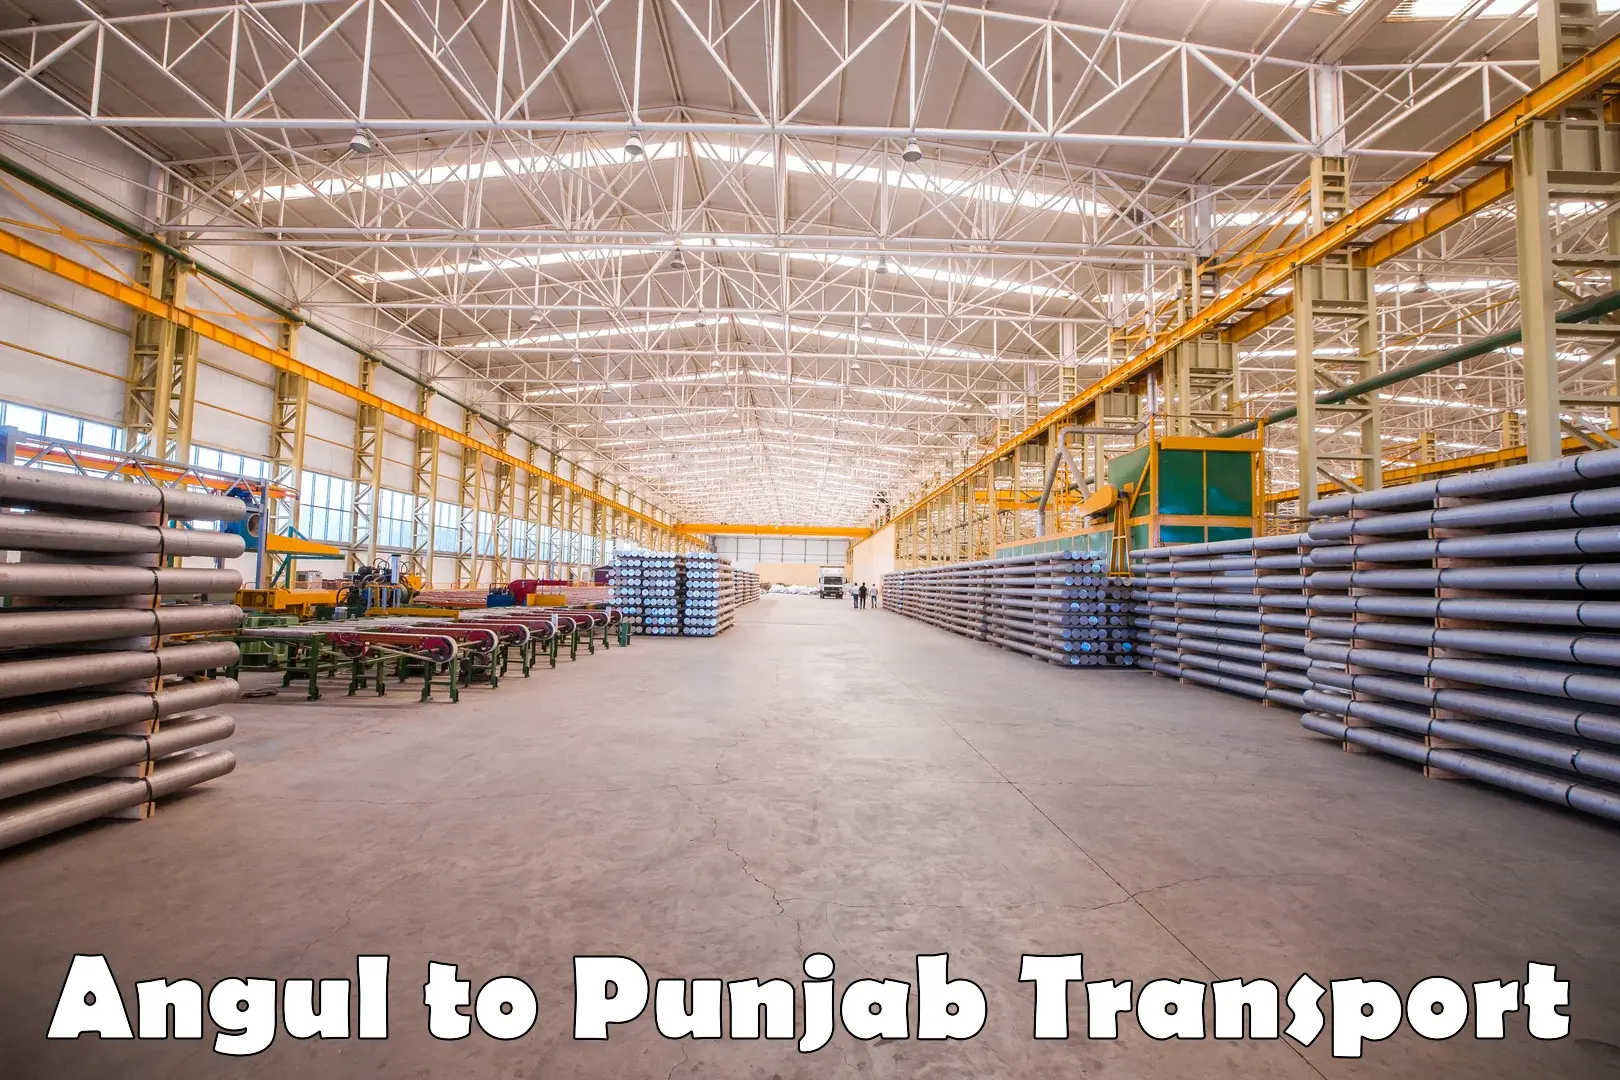 Daily transport service Angul to Punjab